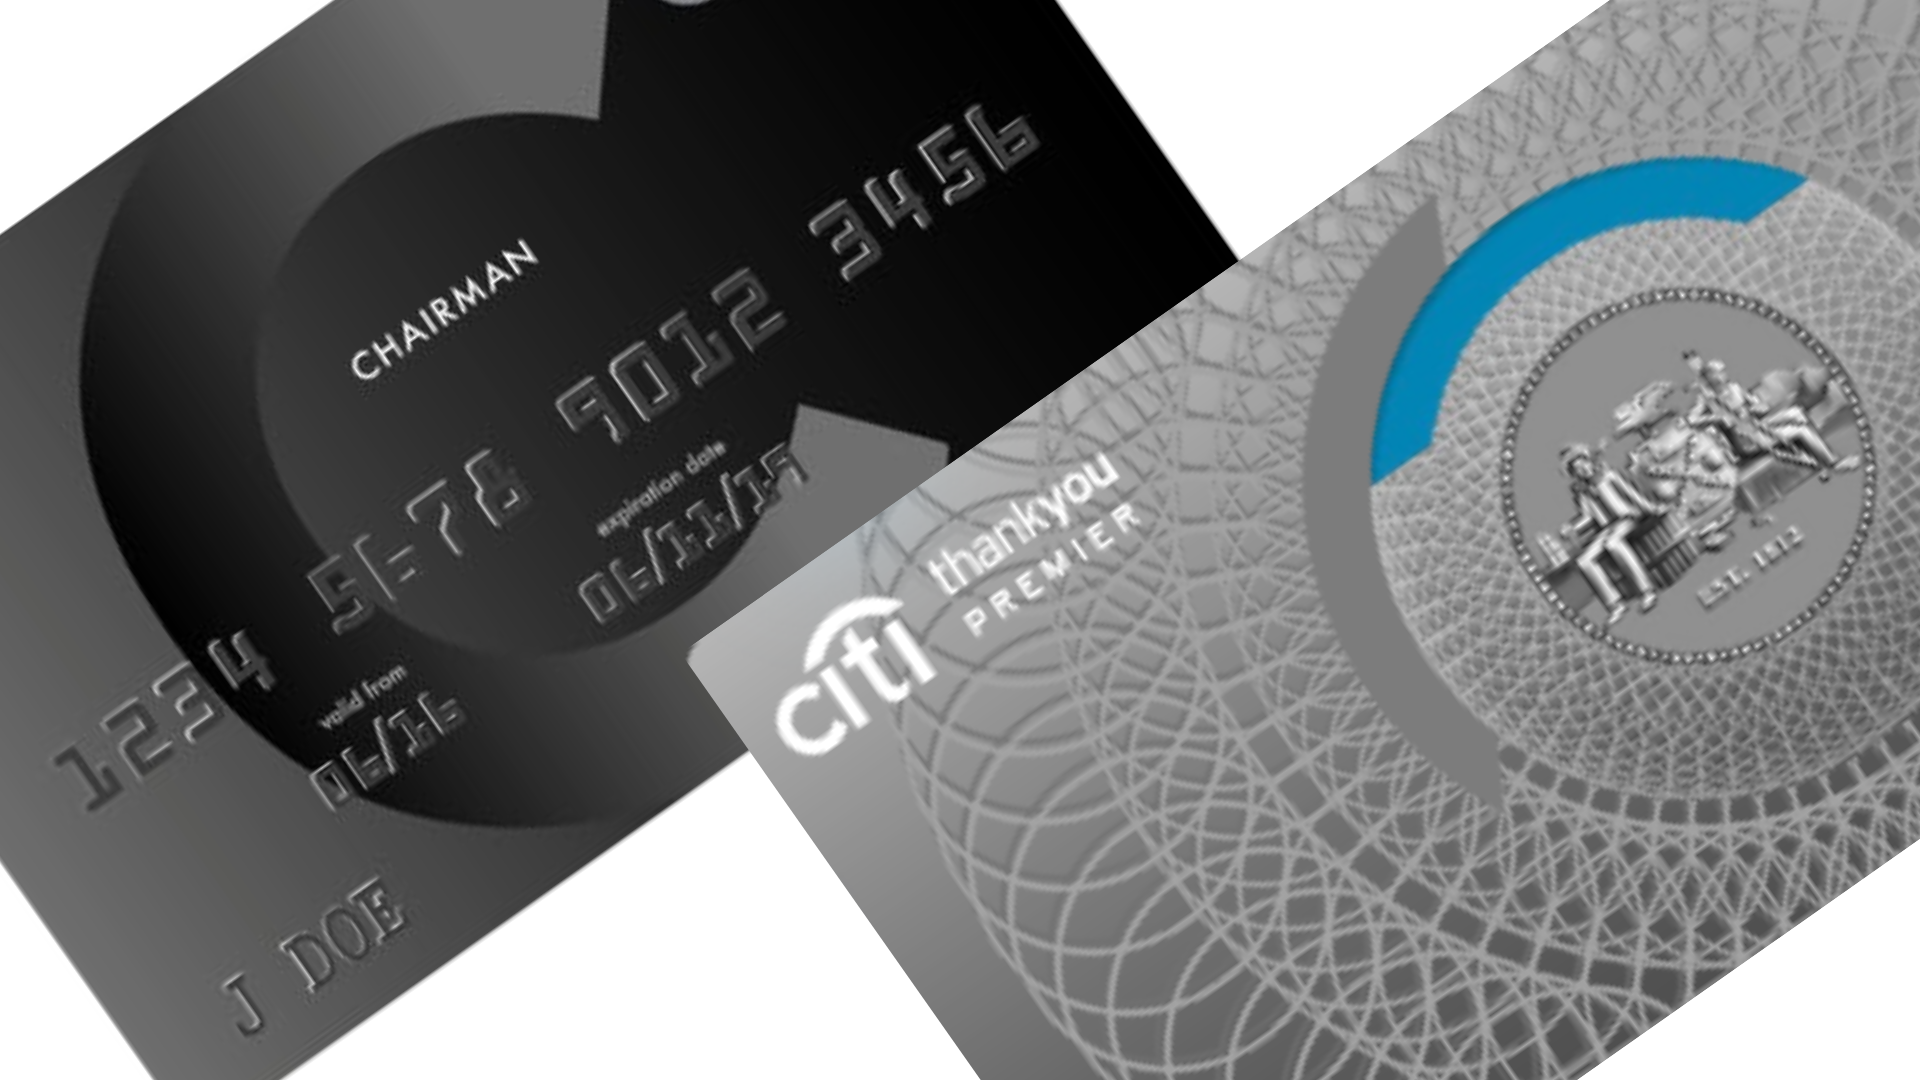 Comparação do cartão Citi Chairman American Express e cartão Citi Premier. Fonte: Citi.